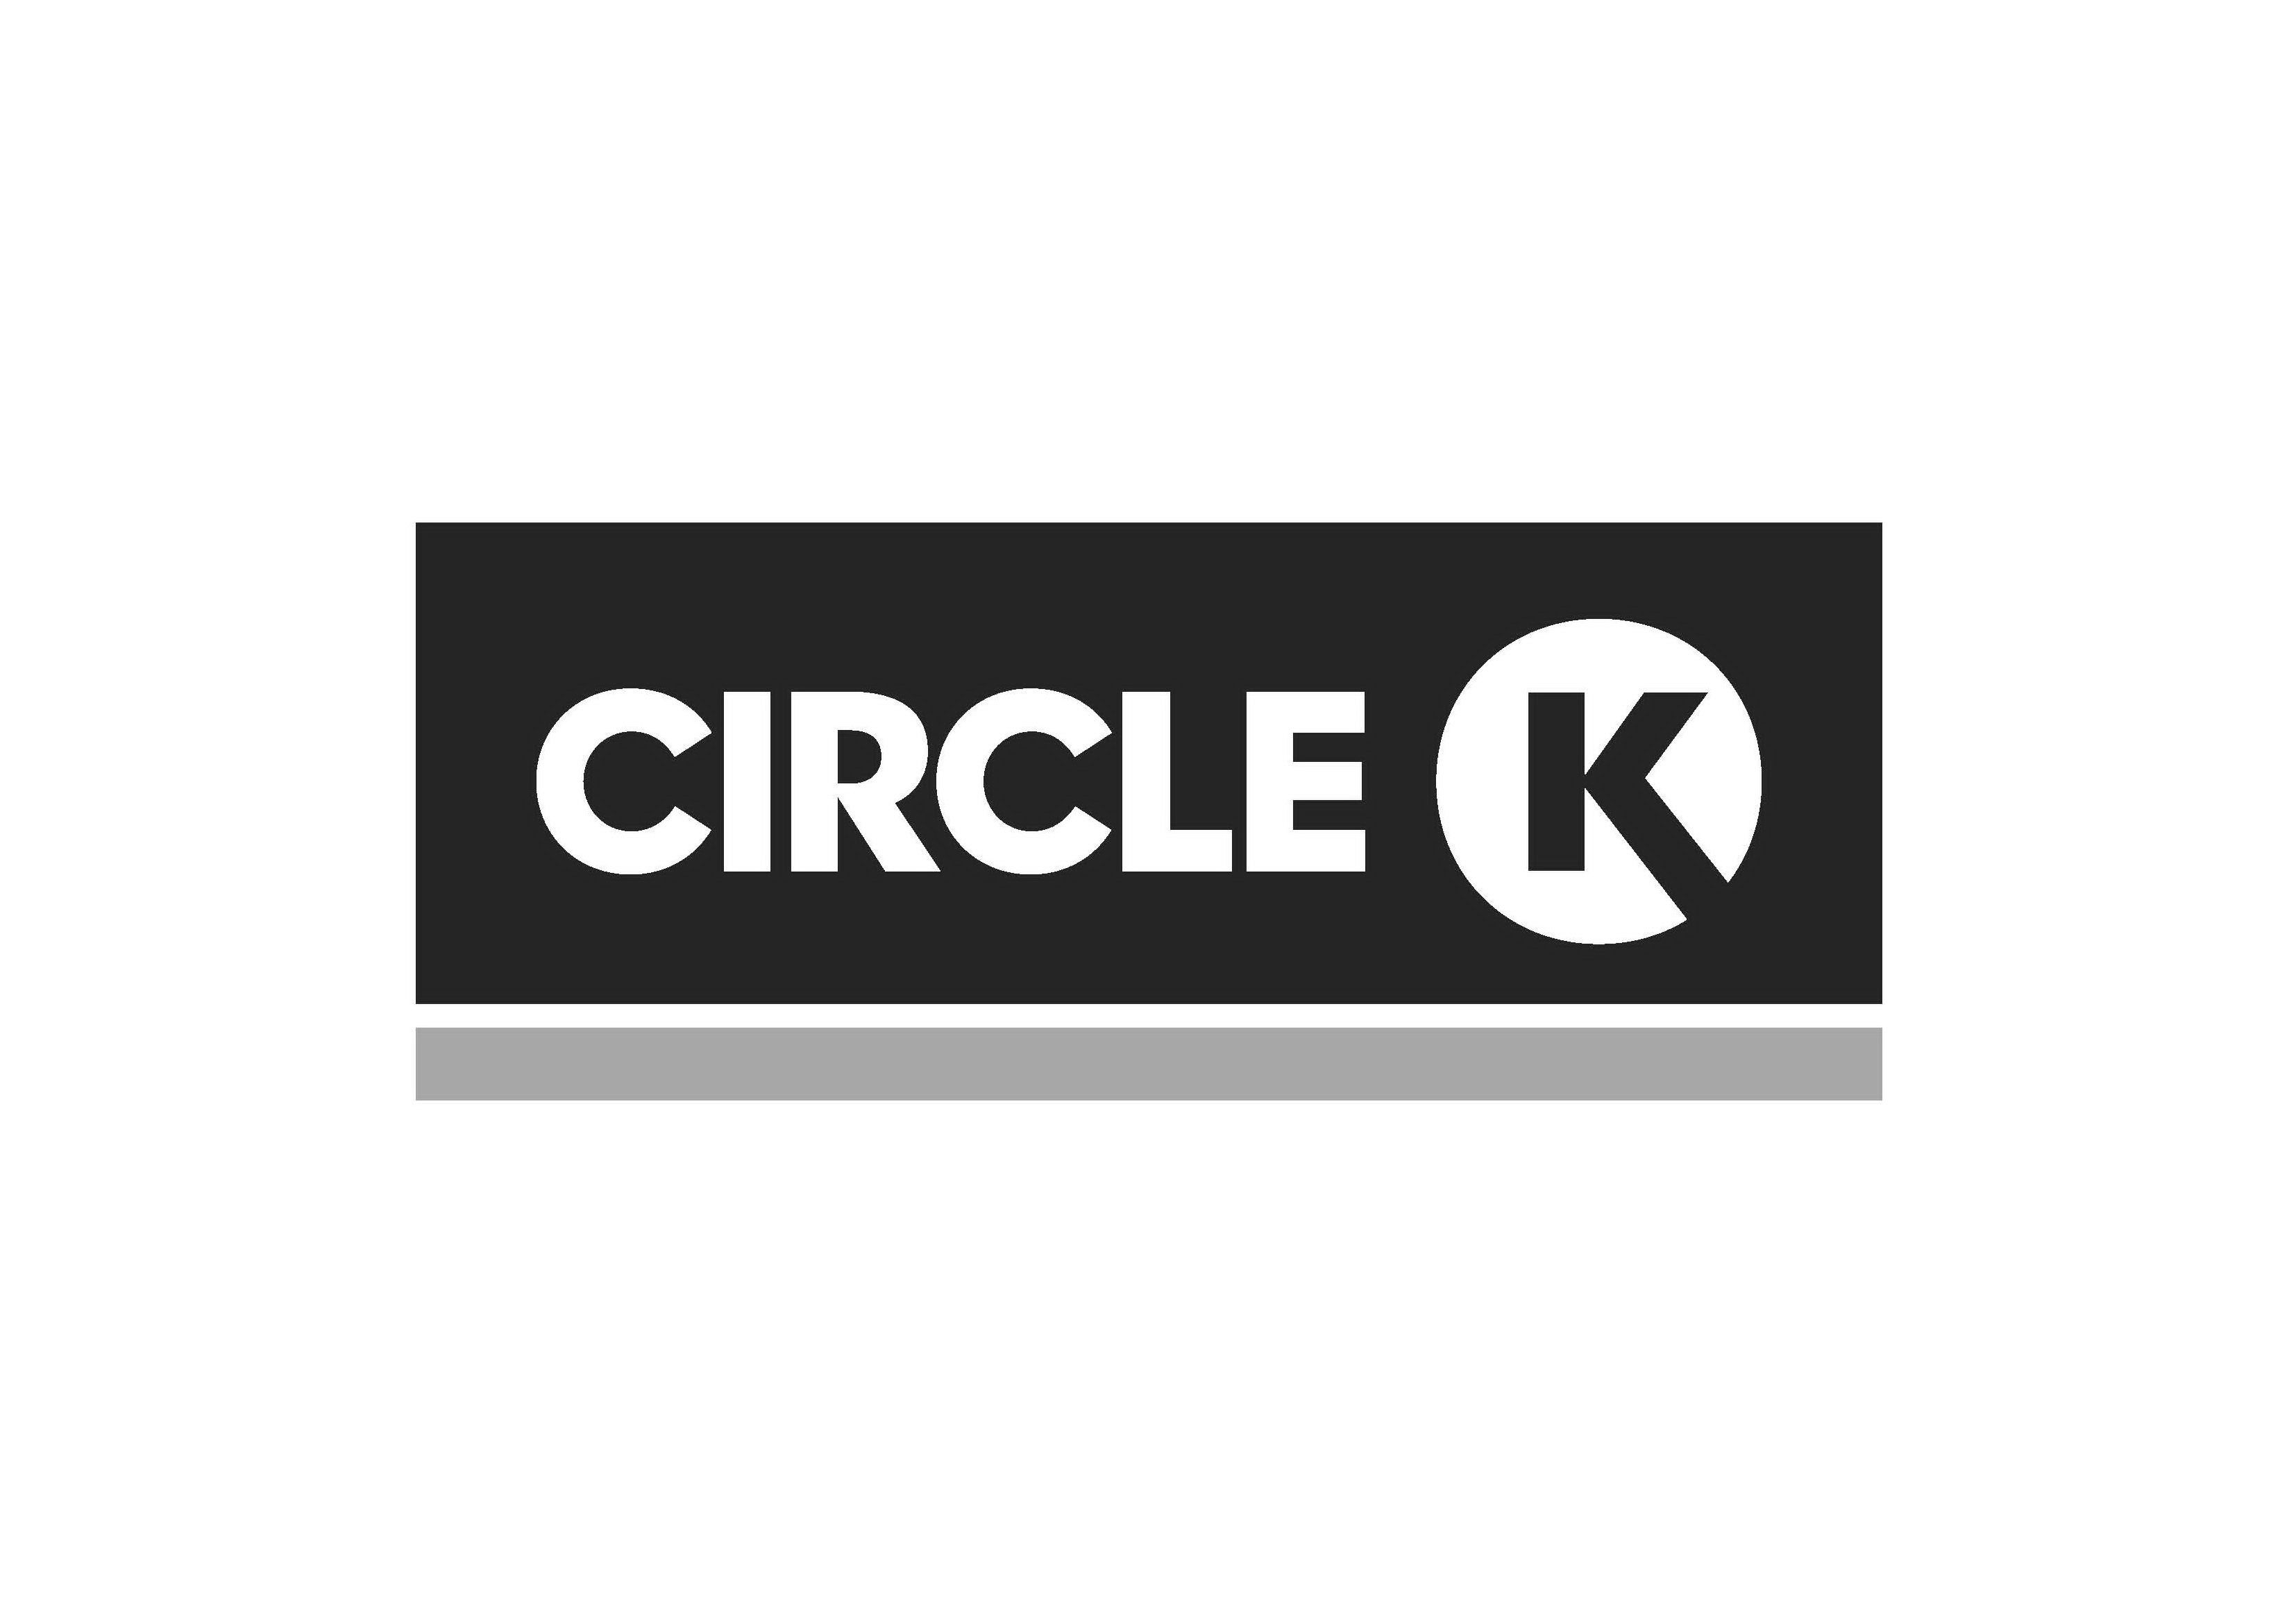 CIRCLE K